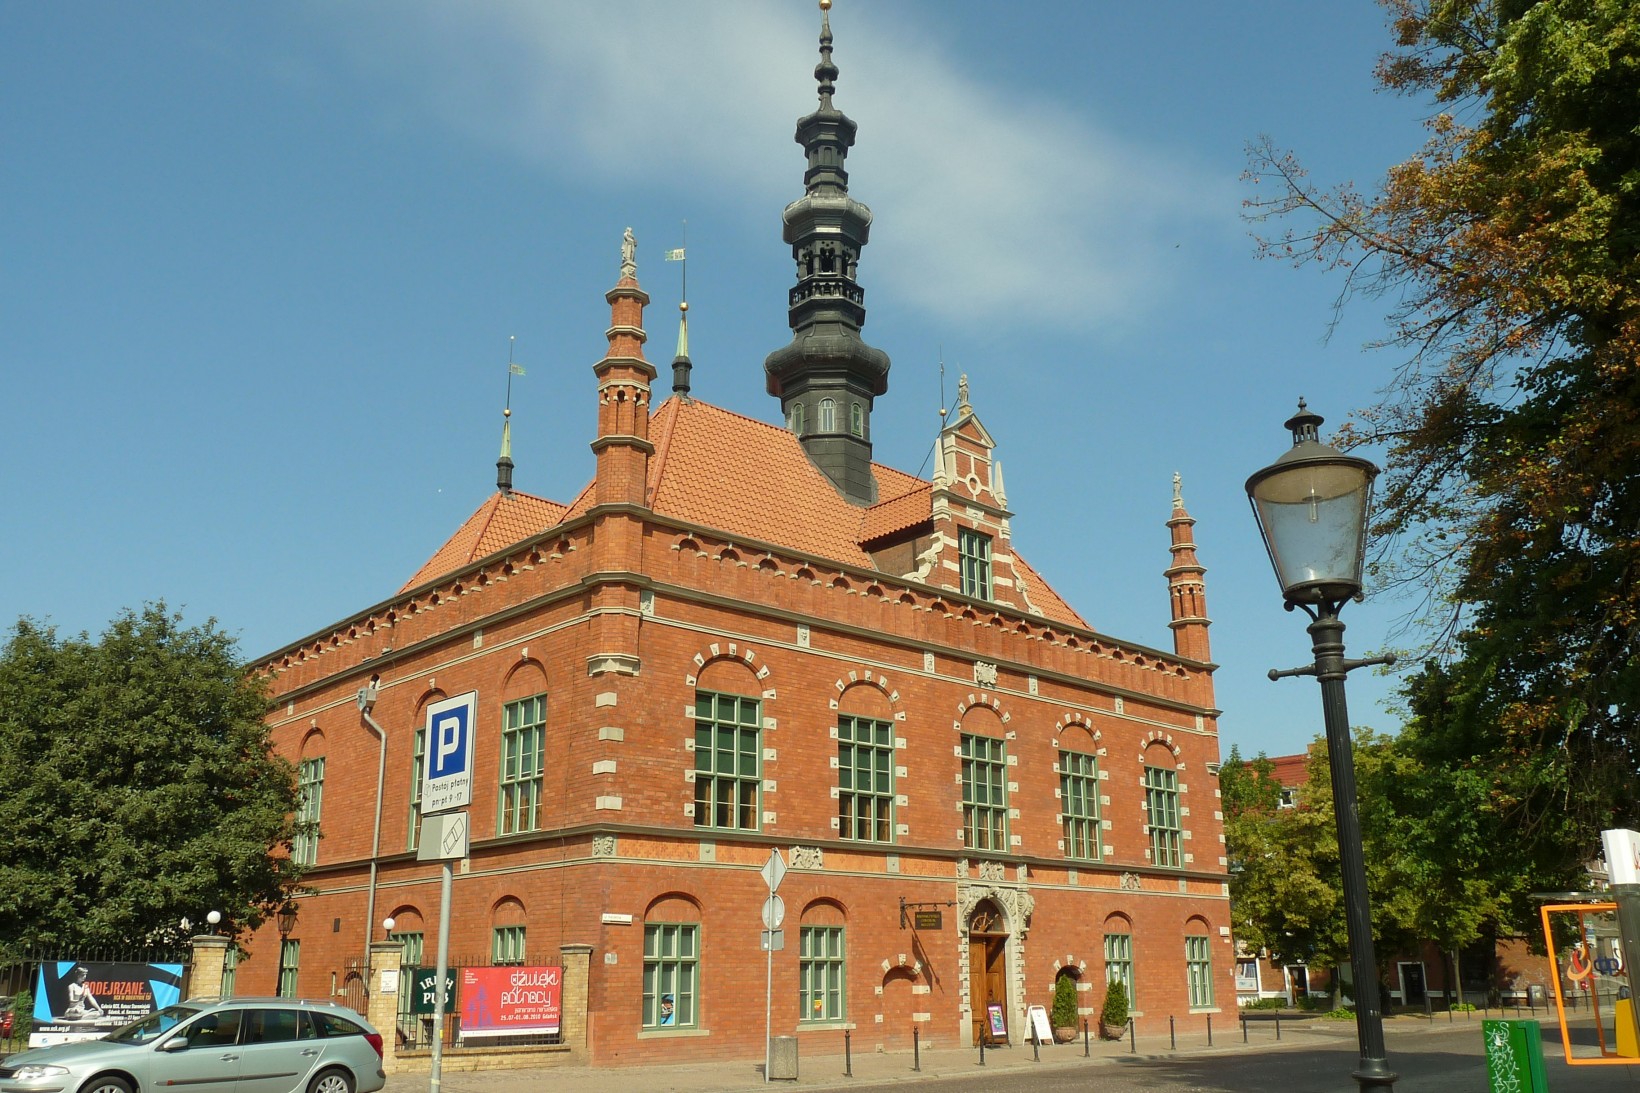 Ratusz Staromiejski w Gdańsku - jedna z dwóch siedzib NCK